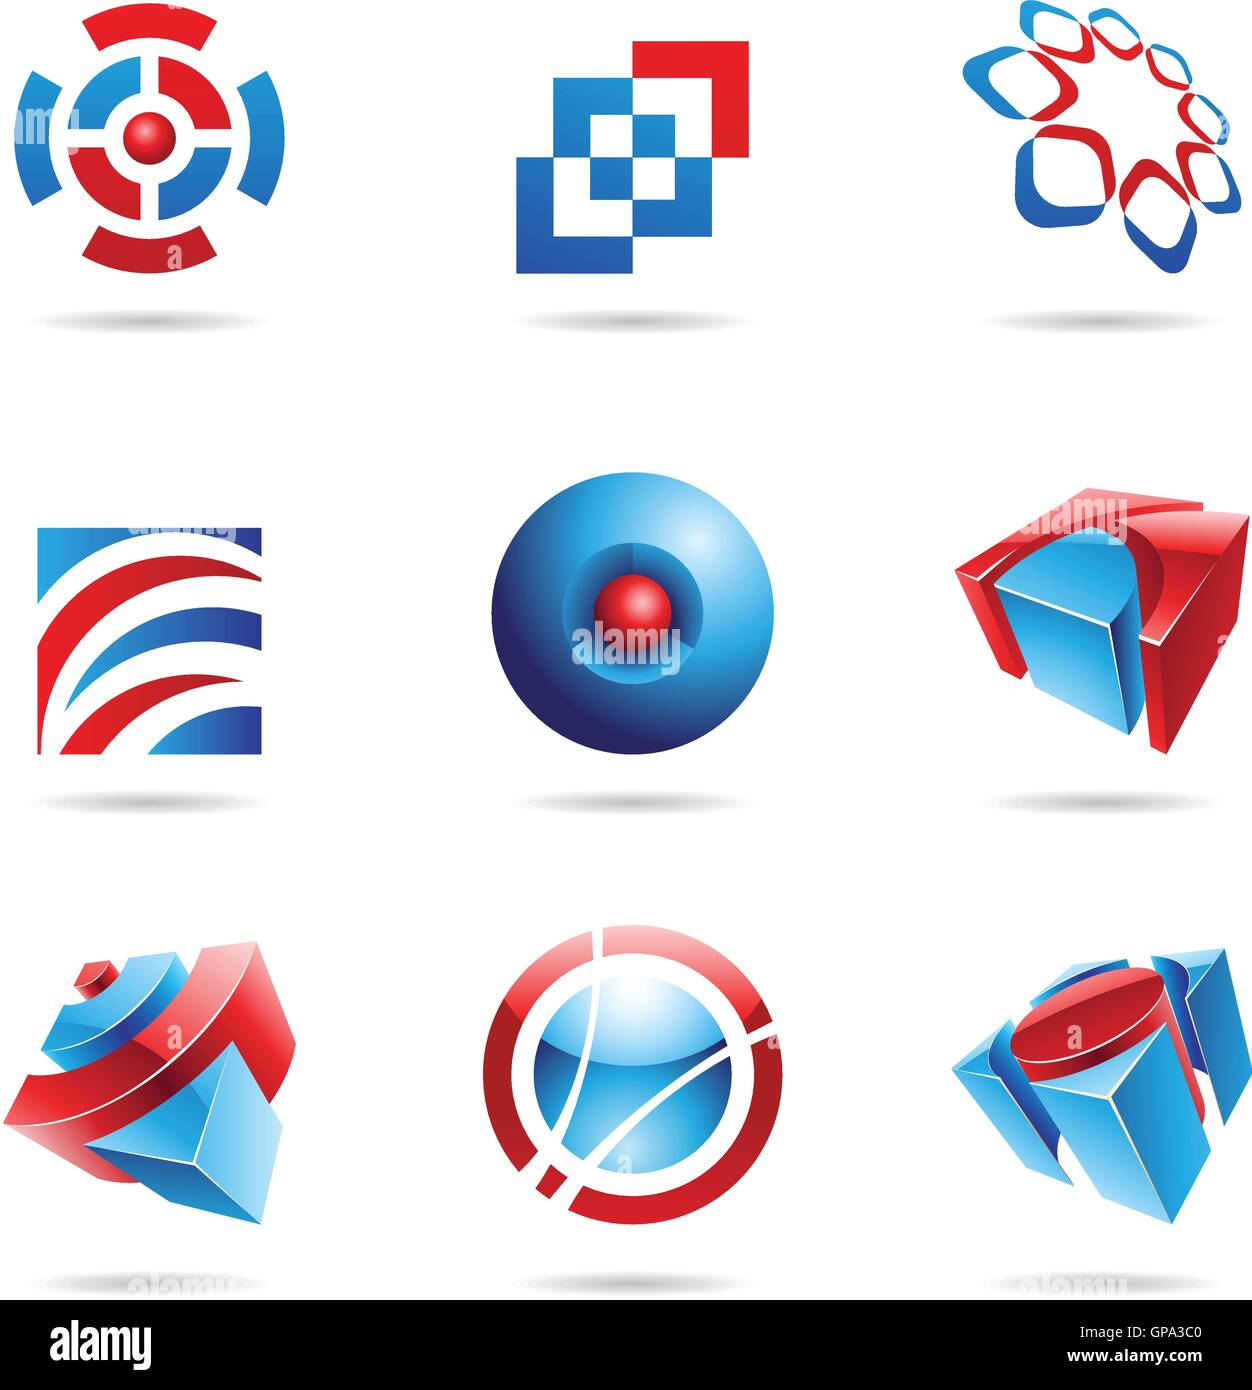 Сине красный логотип. Красно синий логотип. Белый синий красный логотип. Логотип голубой с красным. Логотип голубой красный синий.